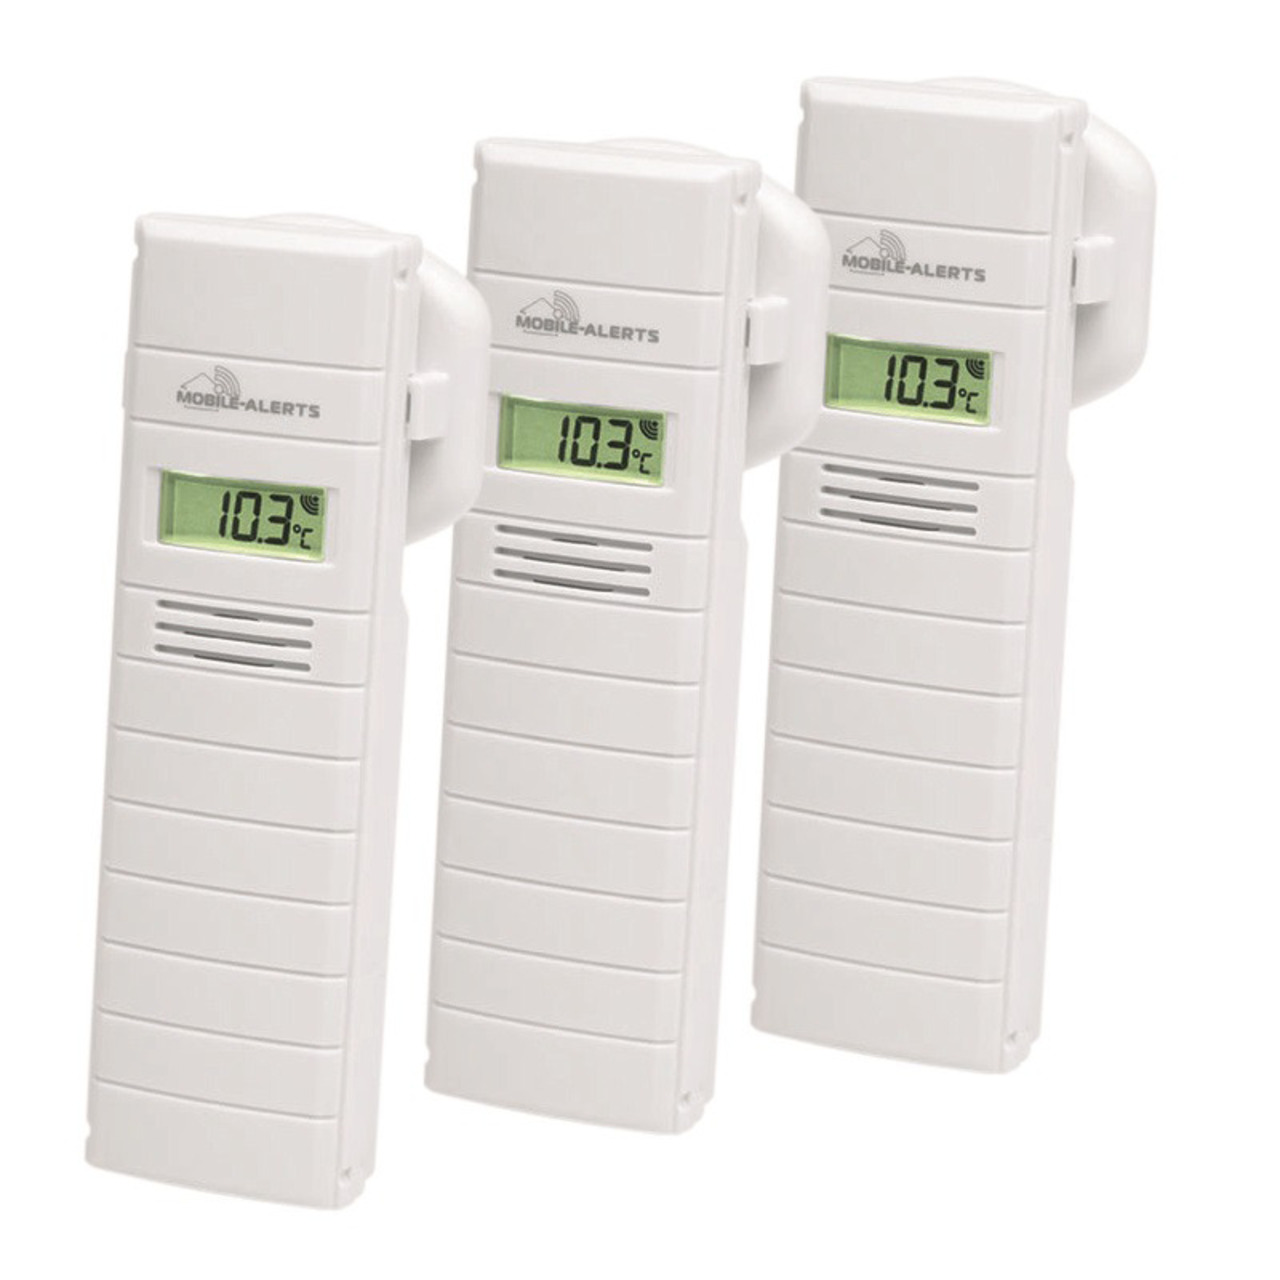 Mobile Alerts 3er Set Temperatur-Luftfeuchtigkeitssensor MA10200 mit LC-Display unter Klima - Wetter - Umwelt